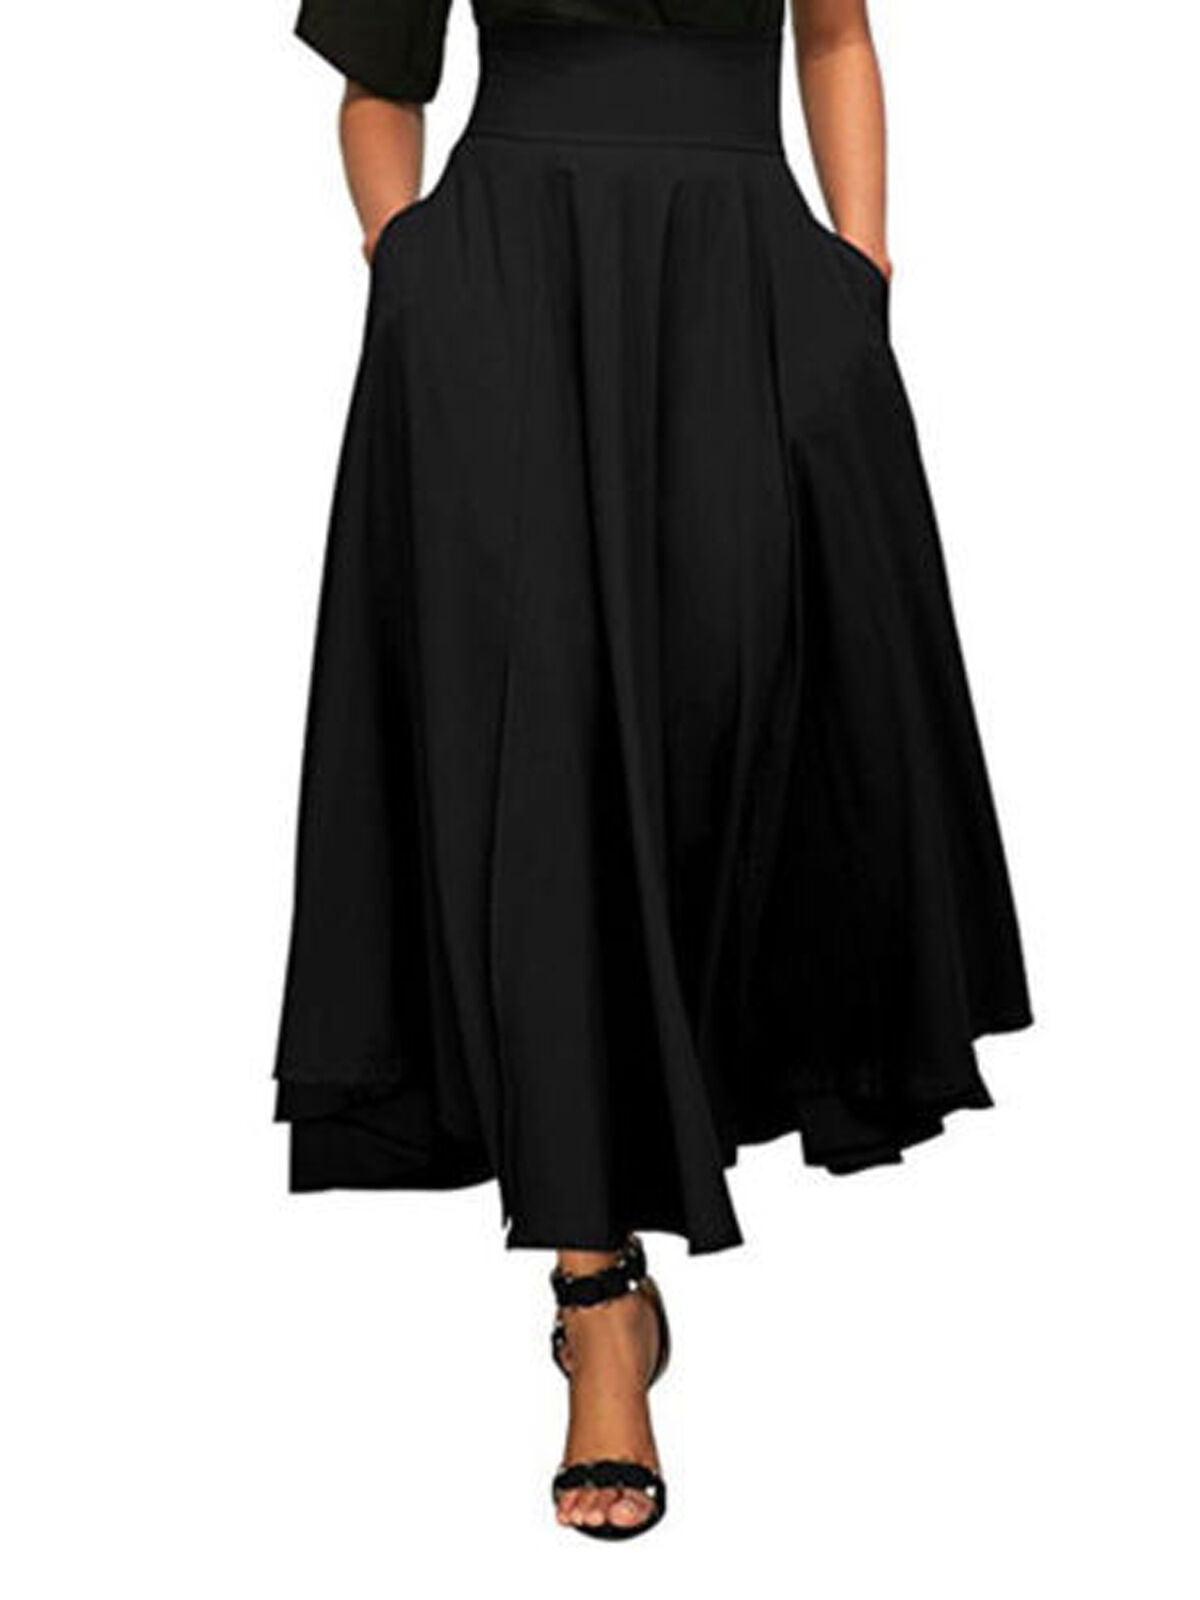 Women Full Length Skirt Flared Pleated Party Long Maxi Skirt High Waist Dress UK 